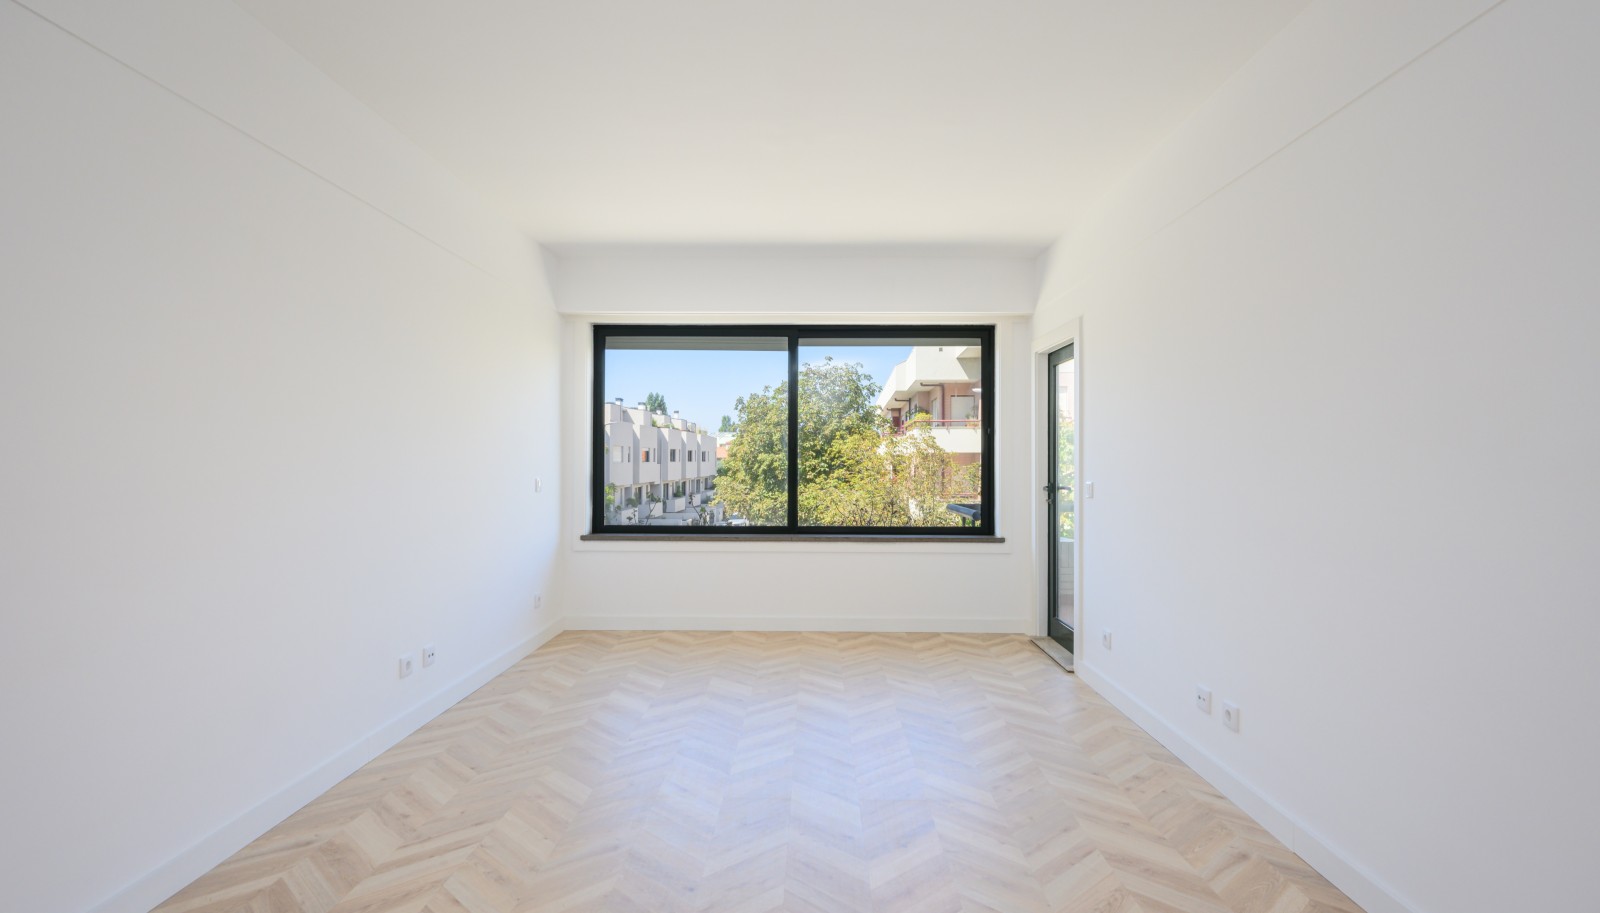 Apartamento T1+1 com varanda, para venda, na Foz do Douro, Porto, Portugal_236203